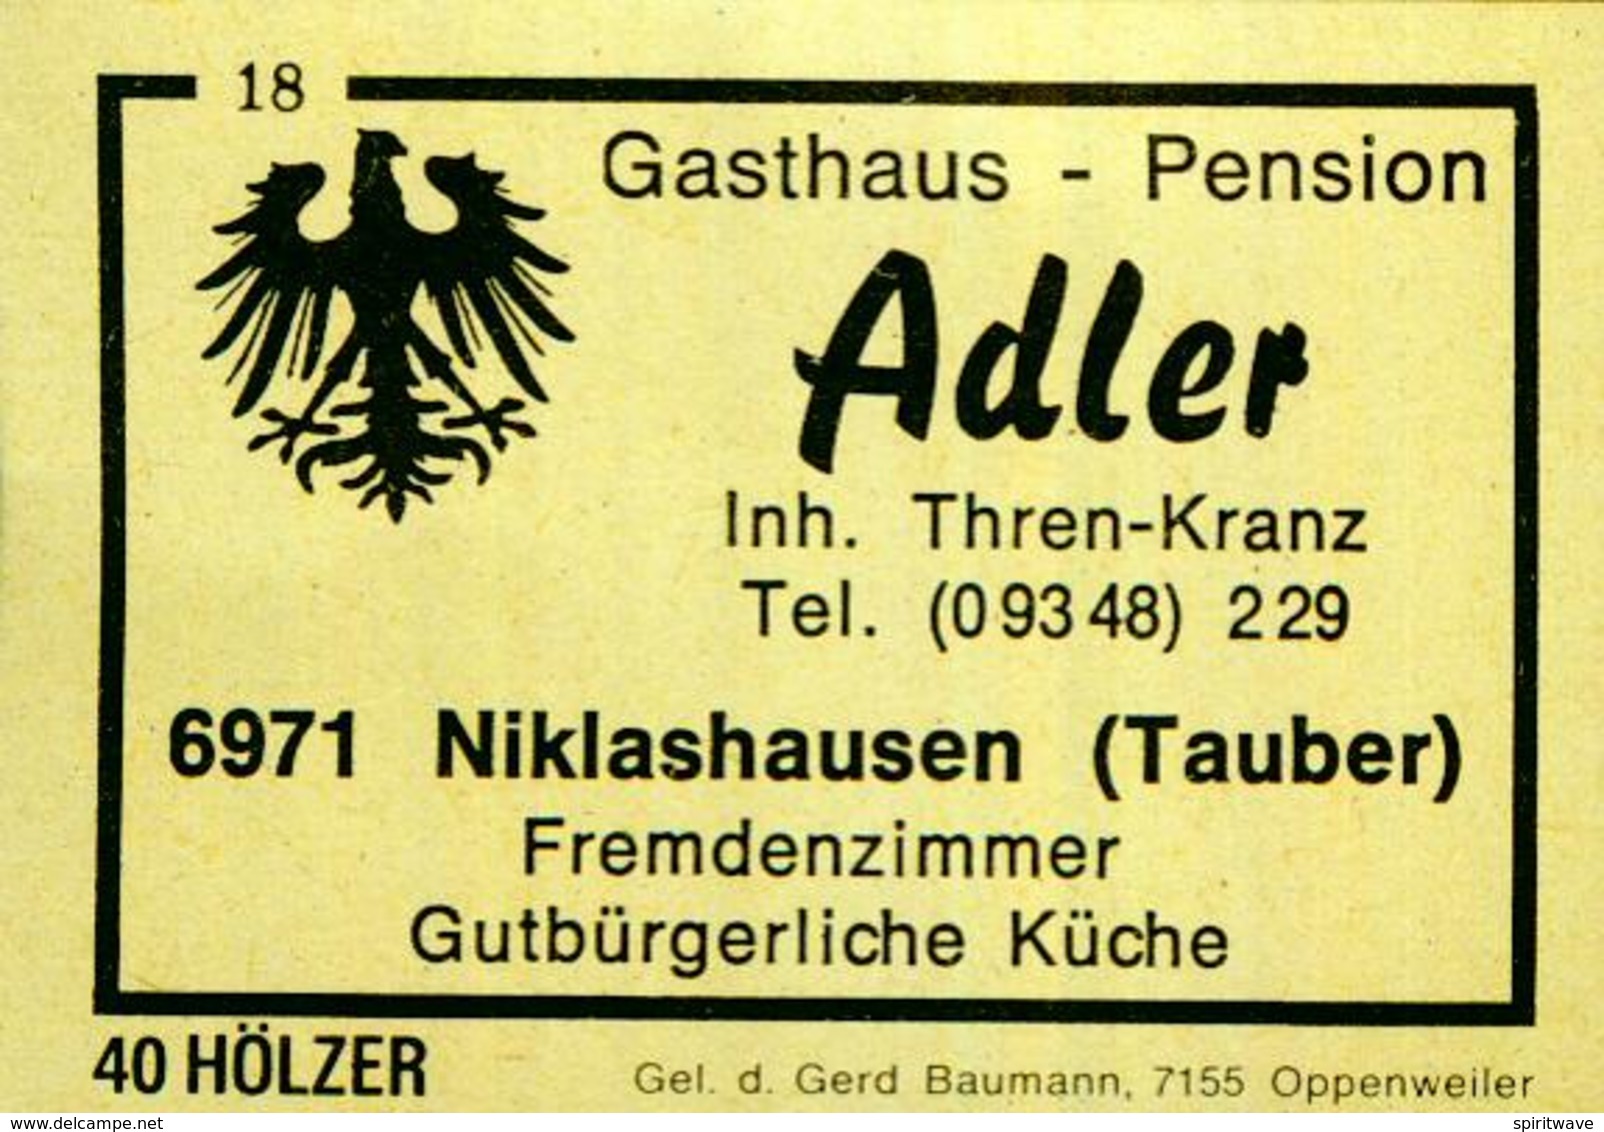 1 Altes Gasthausetikett, Gasthaus – Pension	Adler, Inh. Thren-Kranz, 6971 Niklashausen (Tauber) #198 - Matchbox Labels